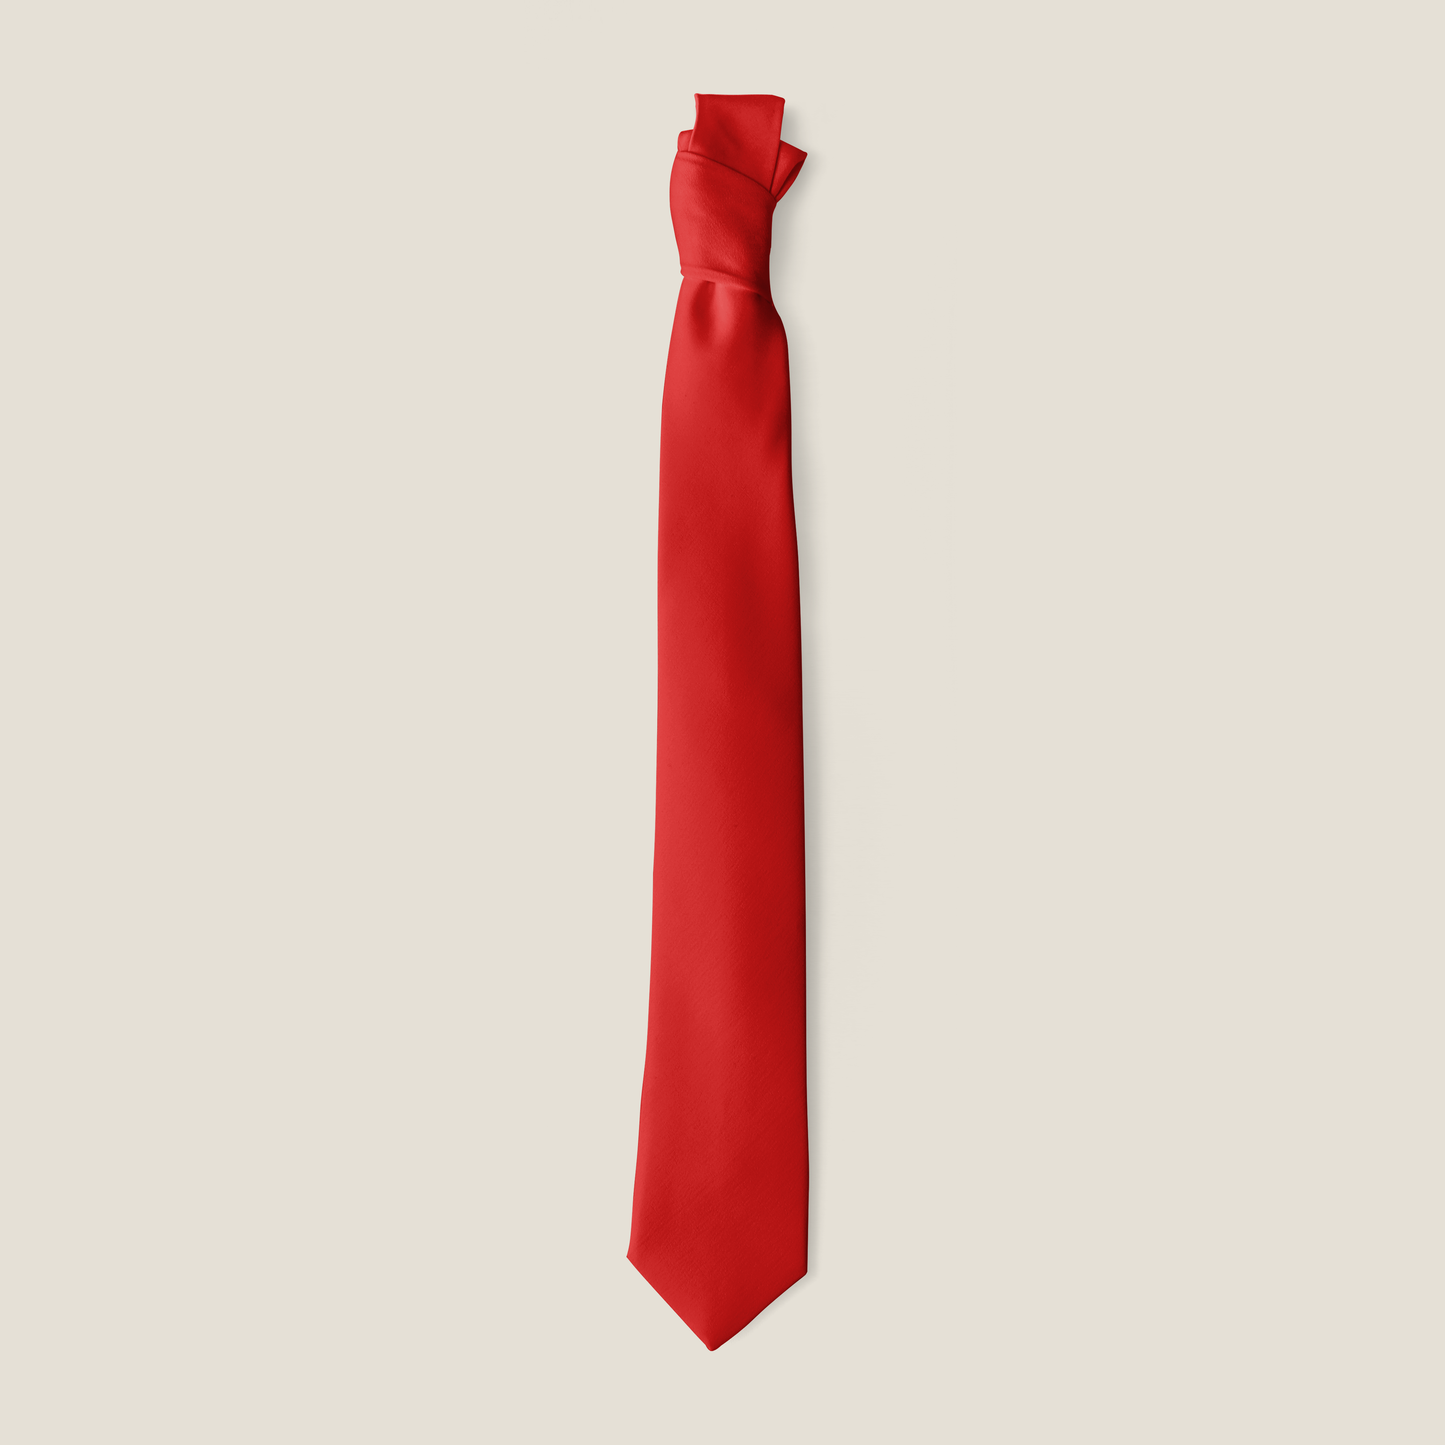 Red Skinny Tie